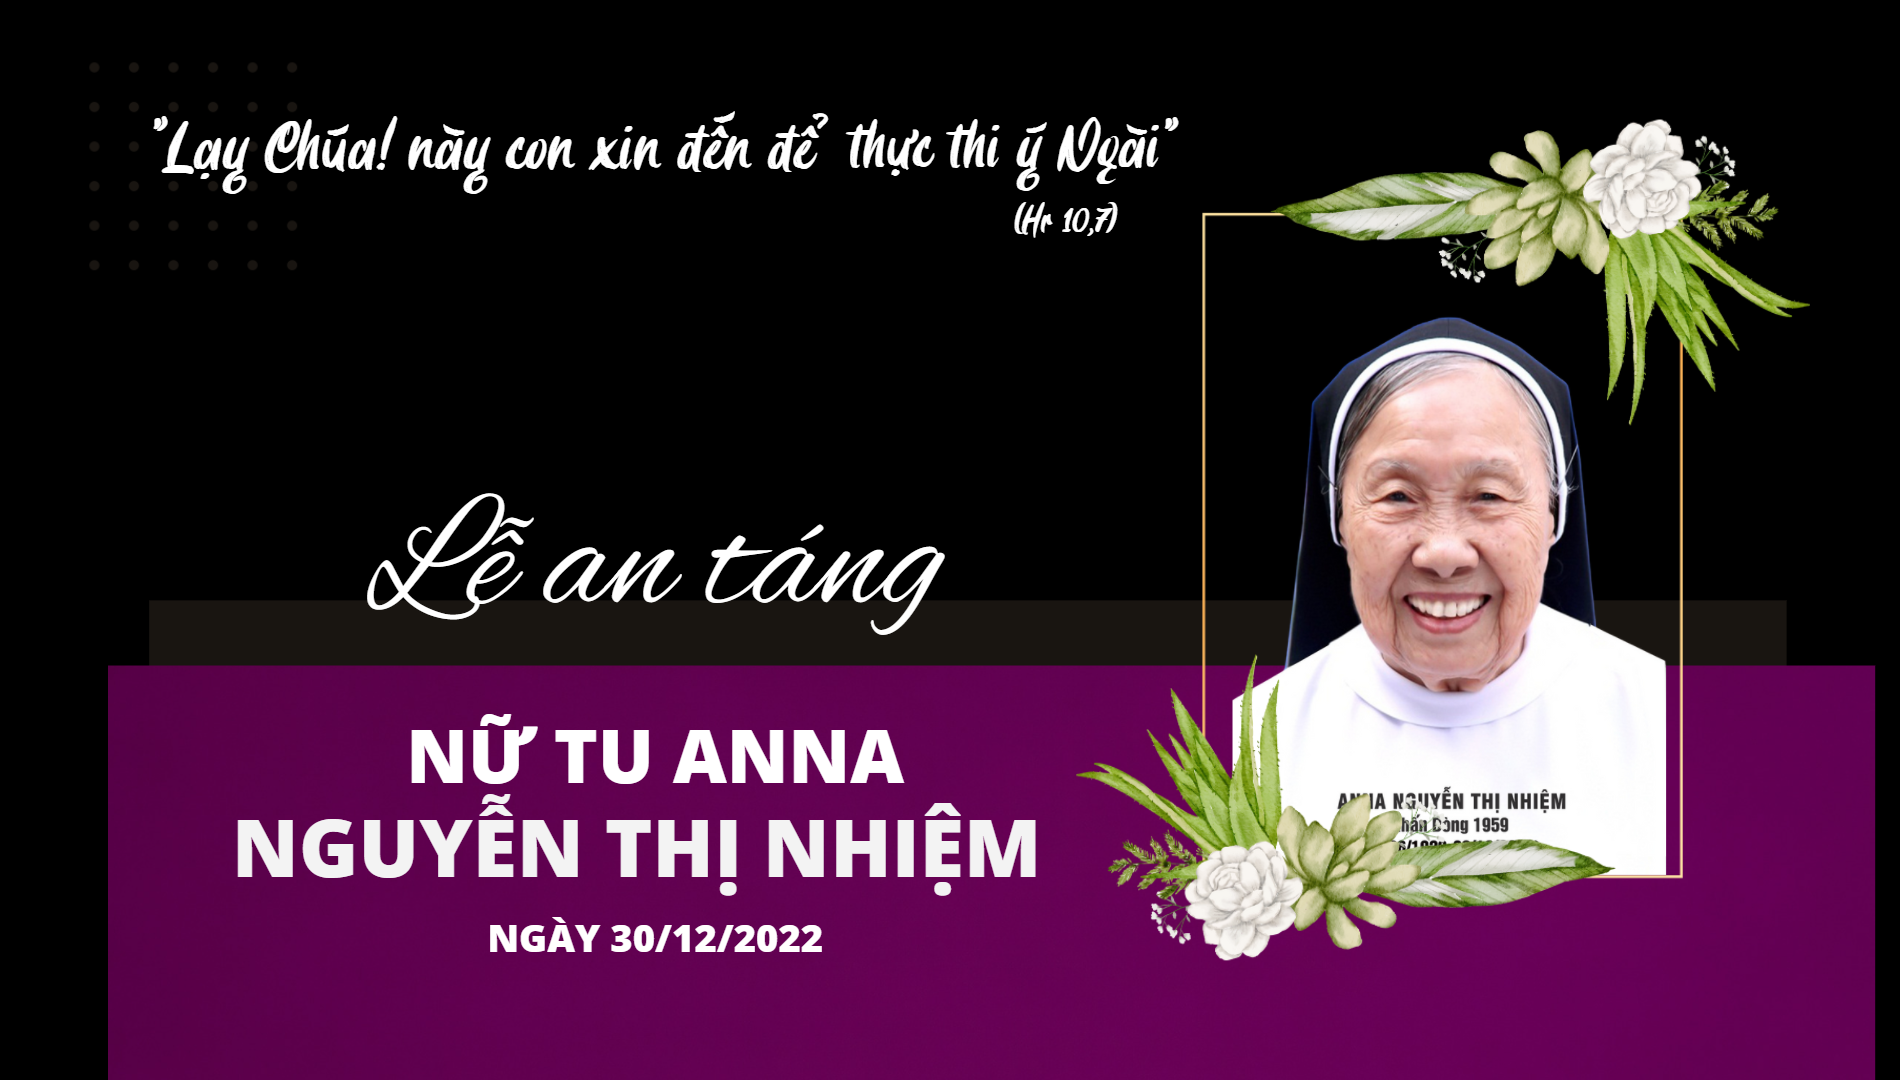 Thánh lễ An táng Dì Anna Nguyễn Thị Nhiệm